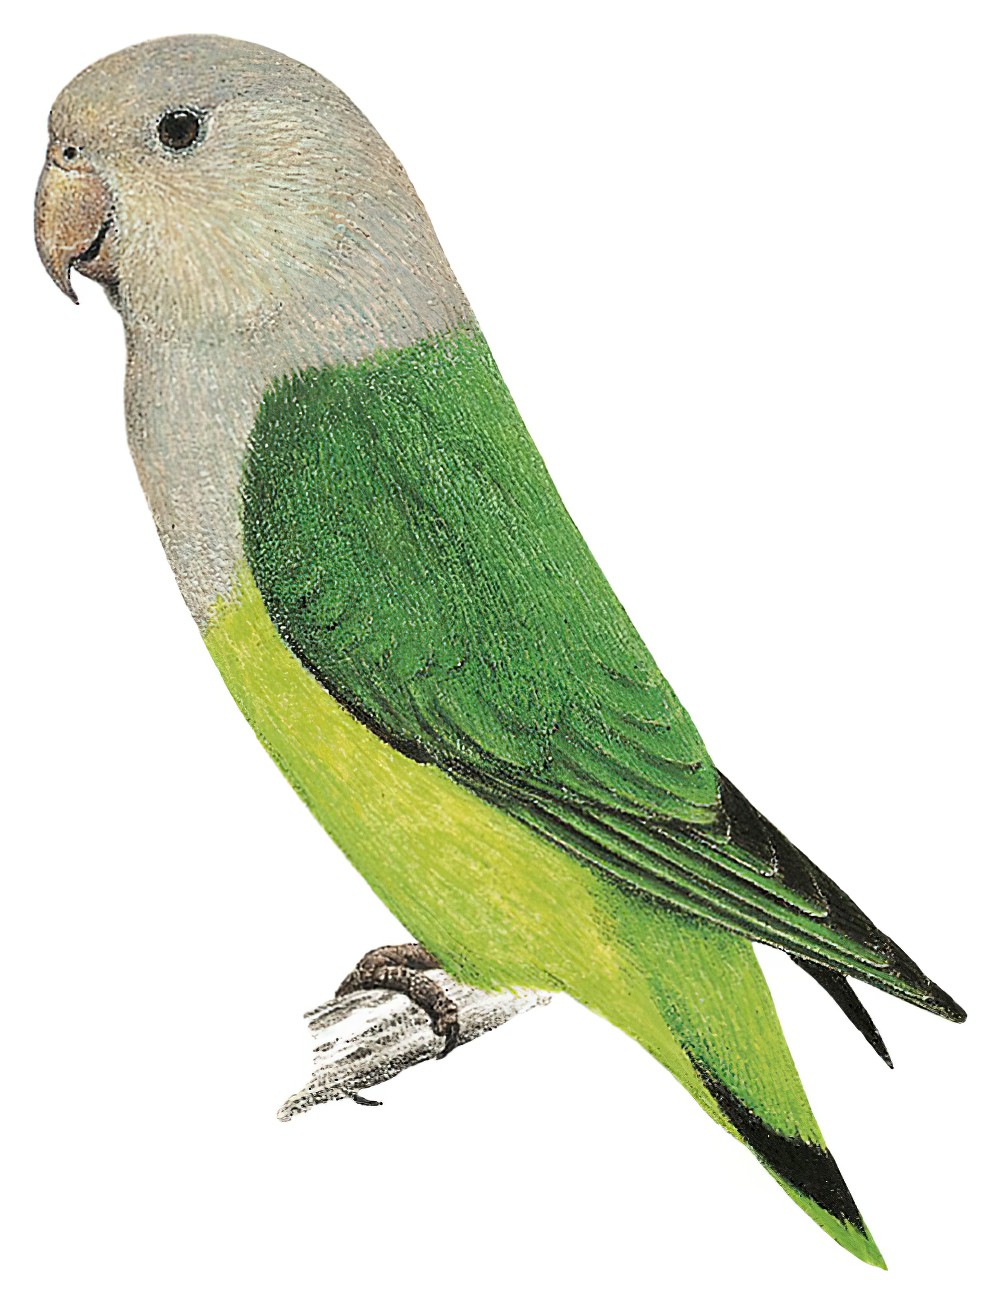 Gray-headed Lovebird / Agapornis canus